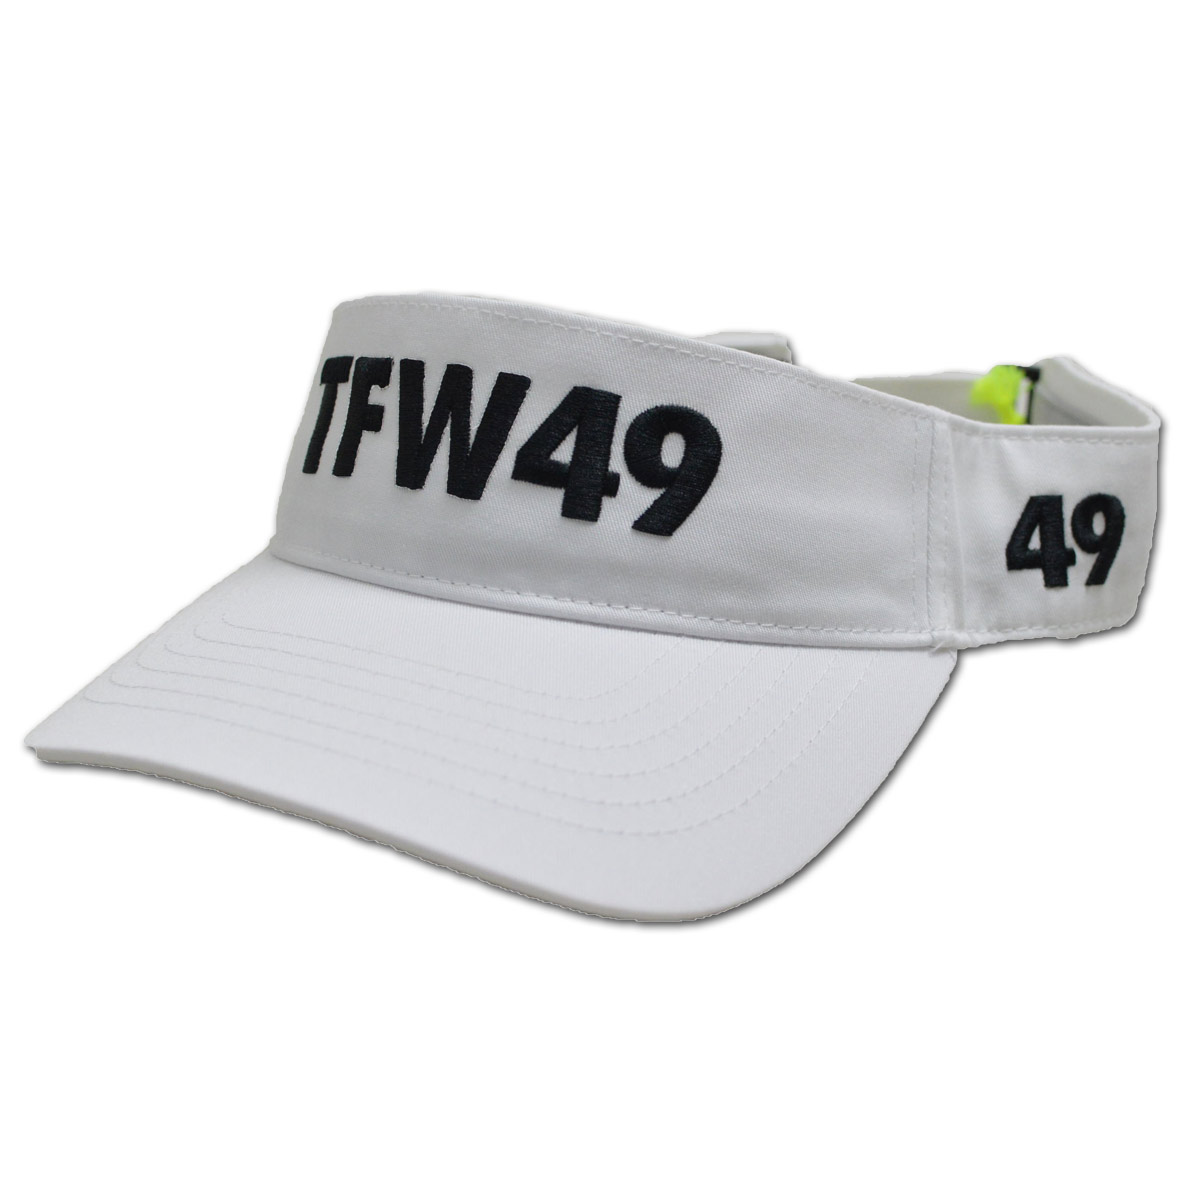 TFW49 サンバイザー メンズ 白 黒 グリーン t132220012 : t132220012 